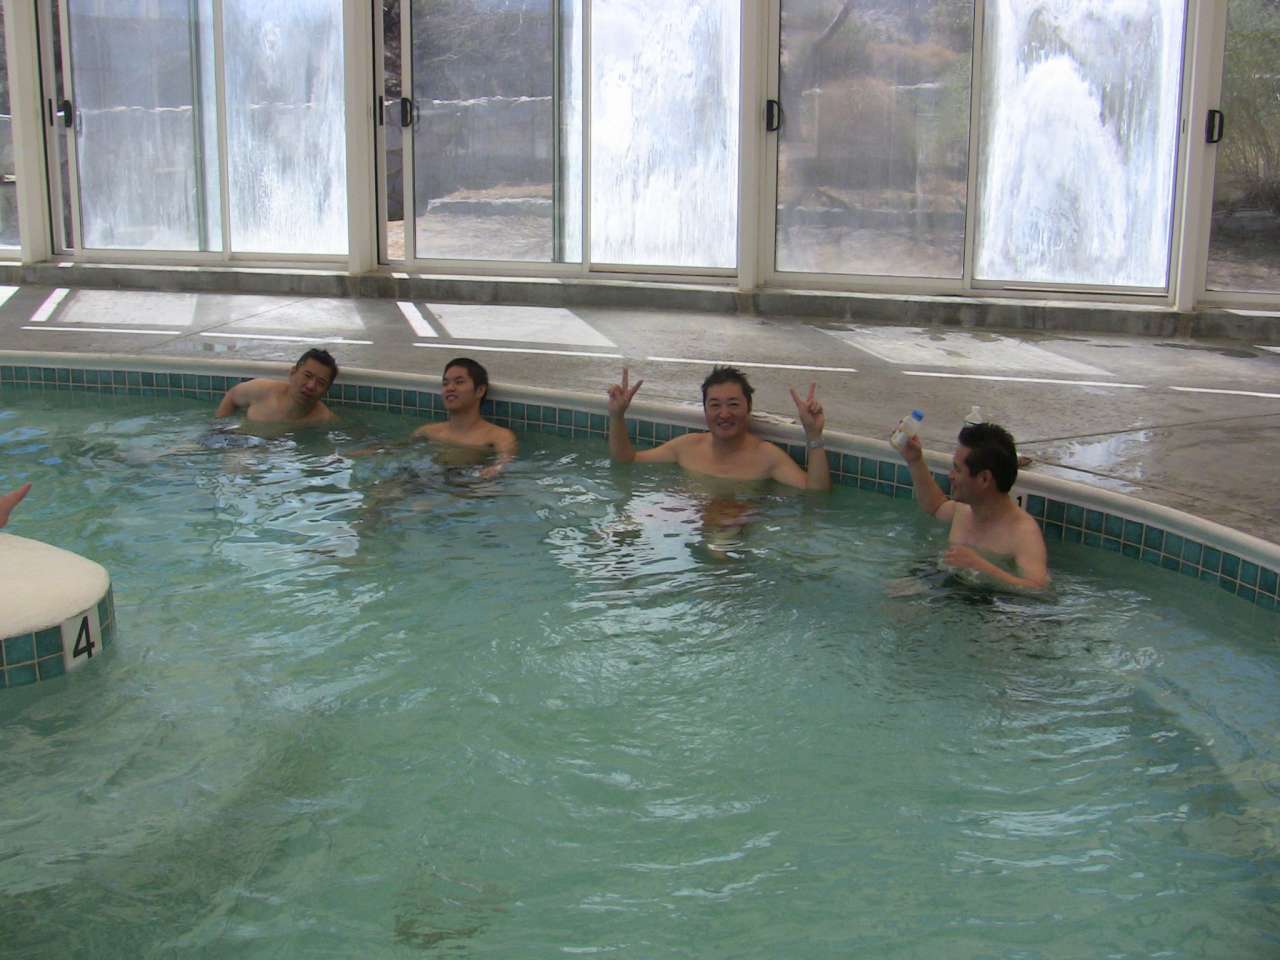 Hot Springs